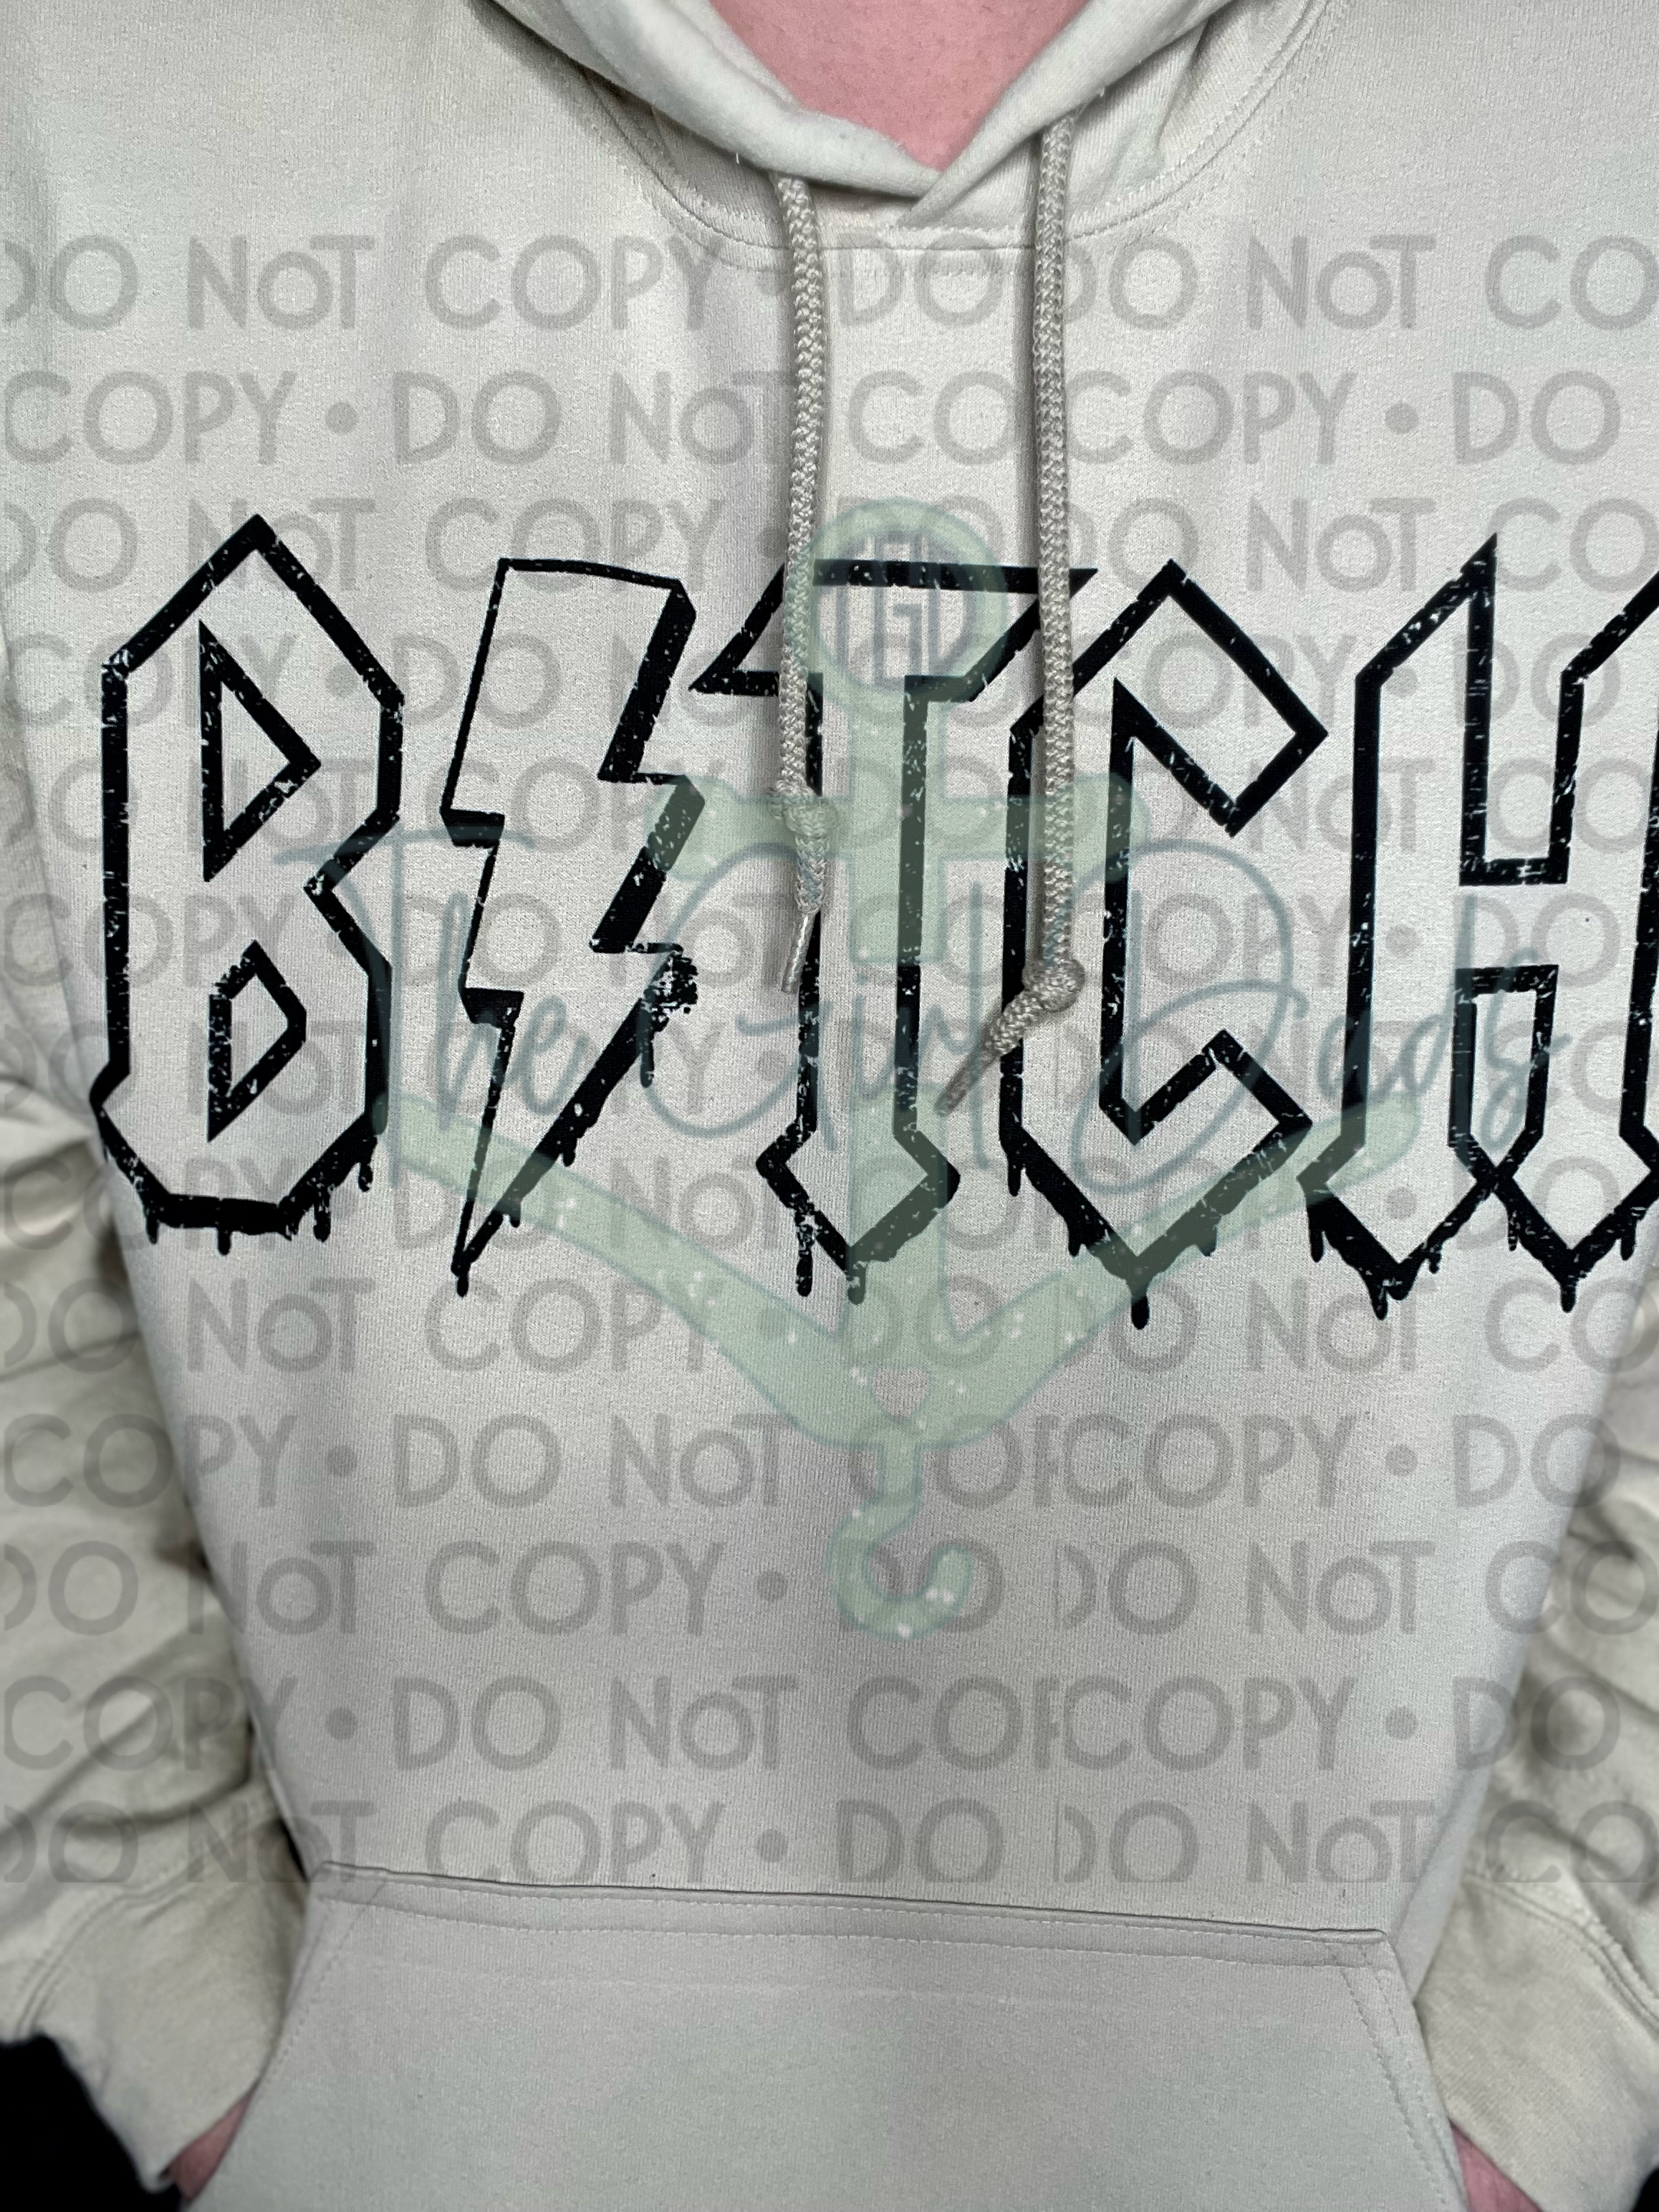 Bitch Top Design